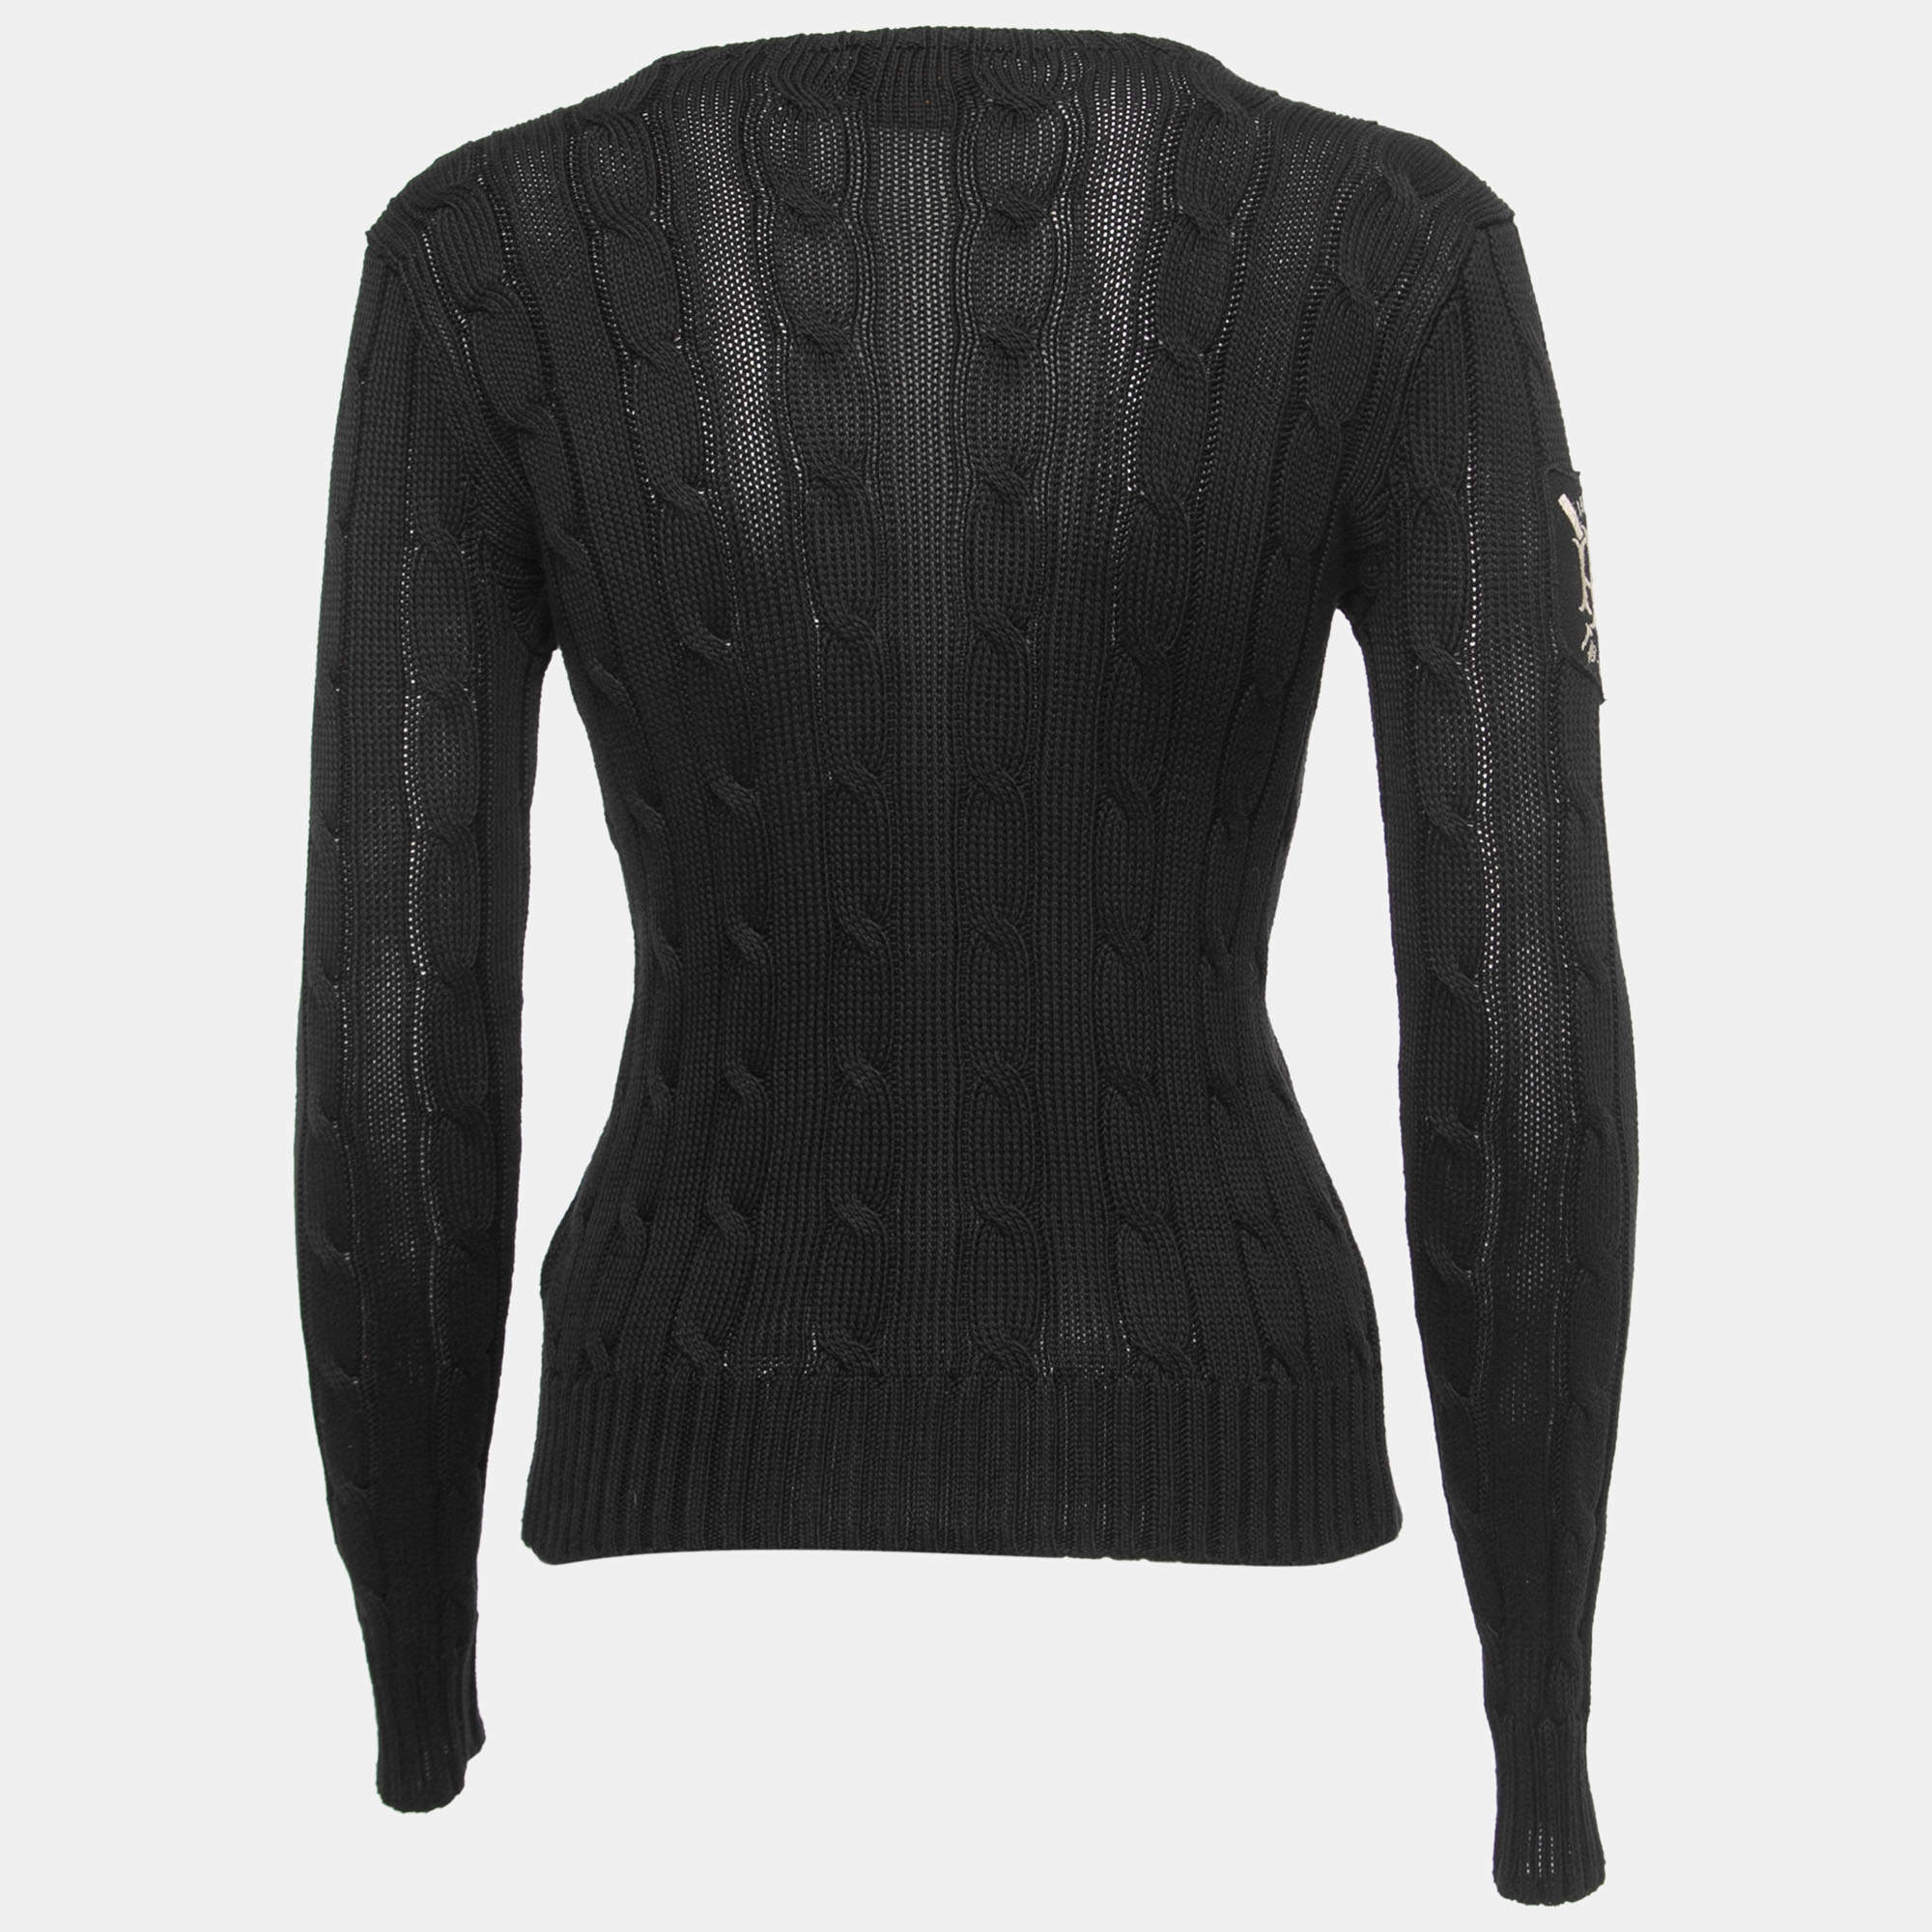 Louis Vuitton Men's Black Cotton Fine Patches Crewneck Sweater